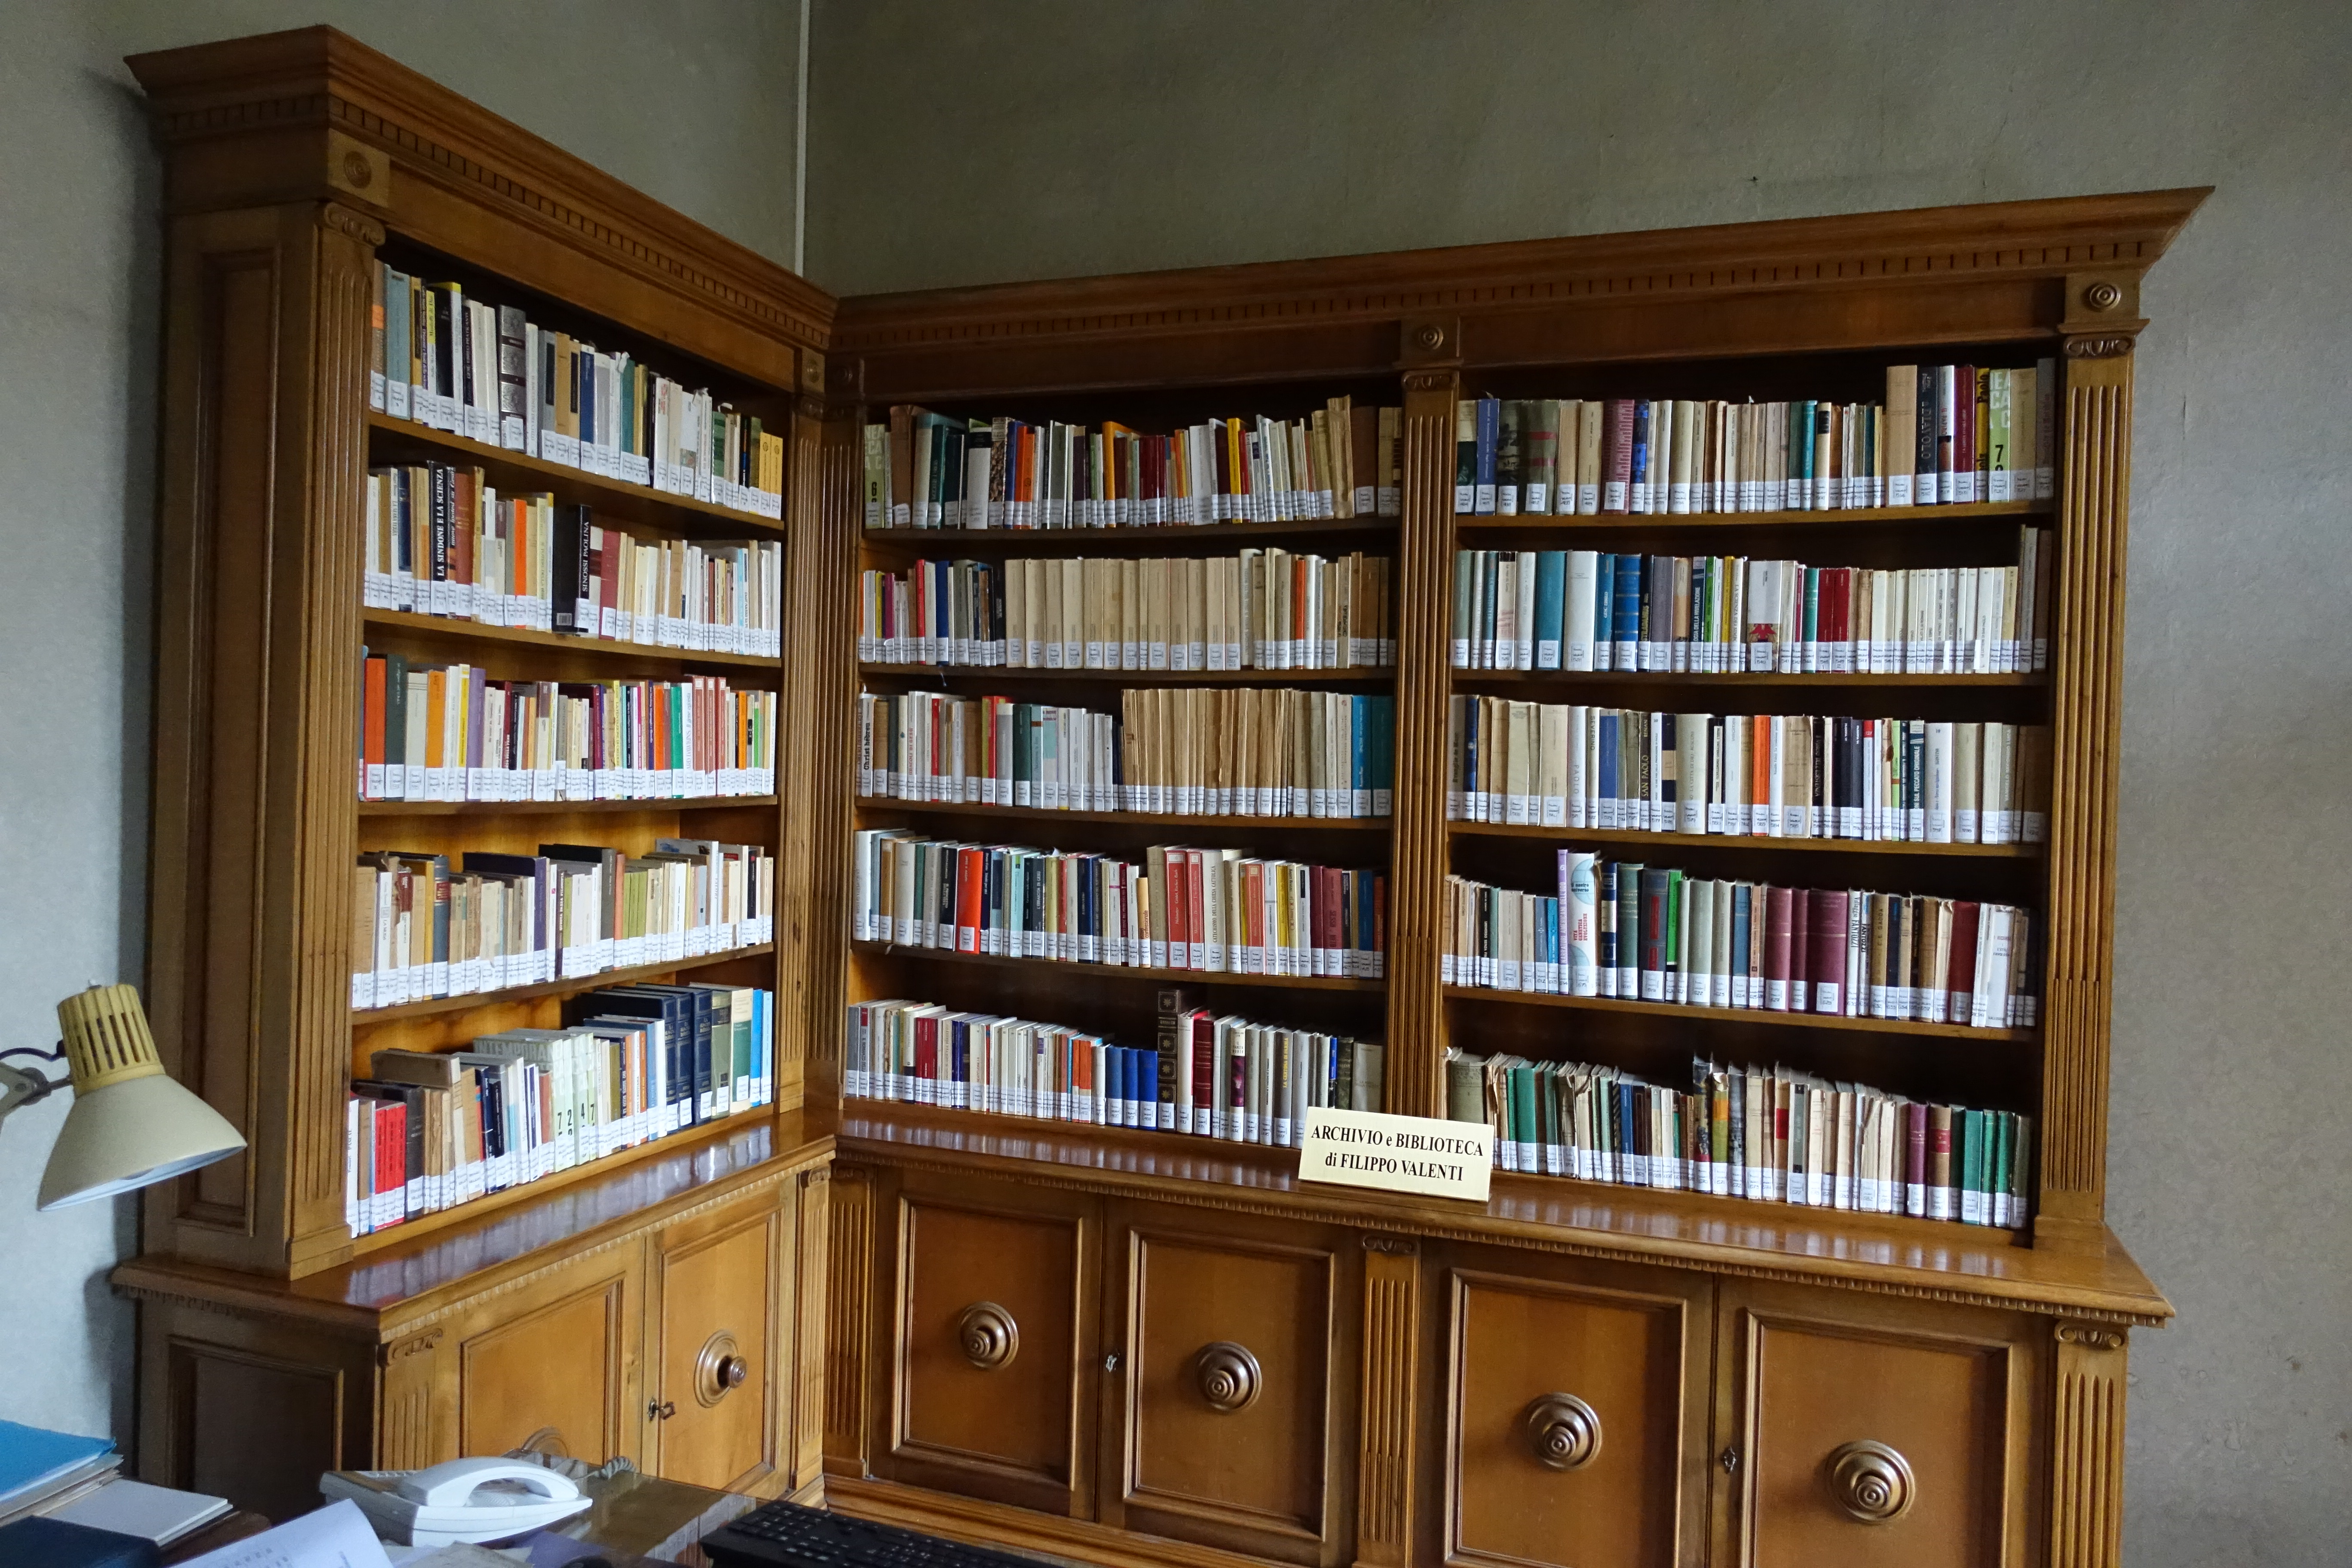 La nuova sistemazione dell'archivio e biblioteca Valenti.